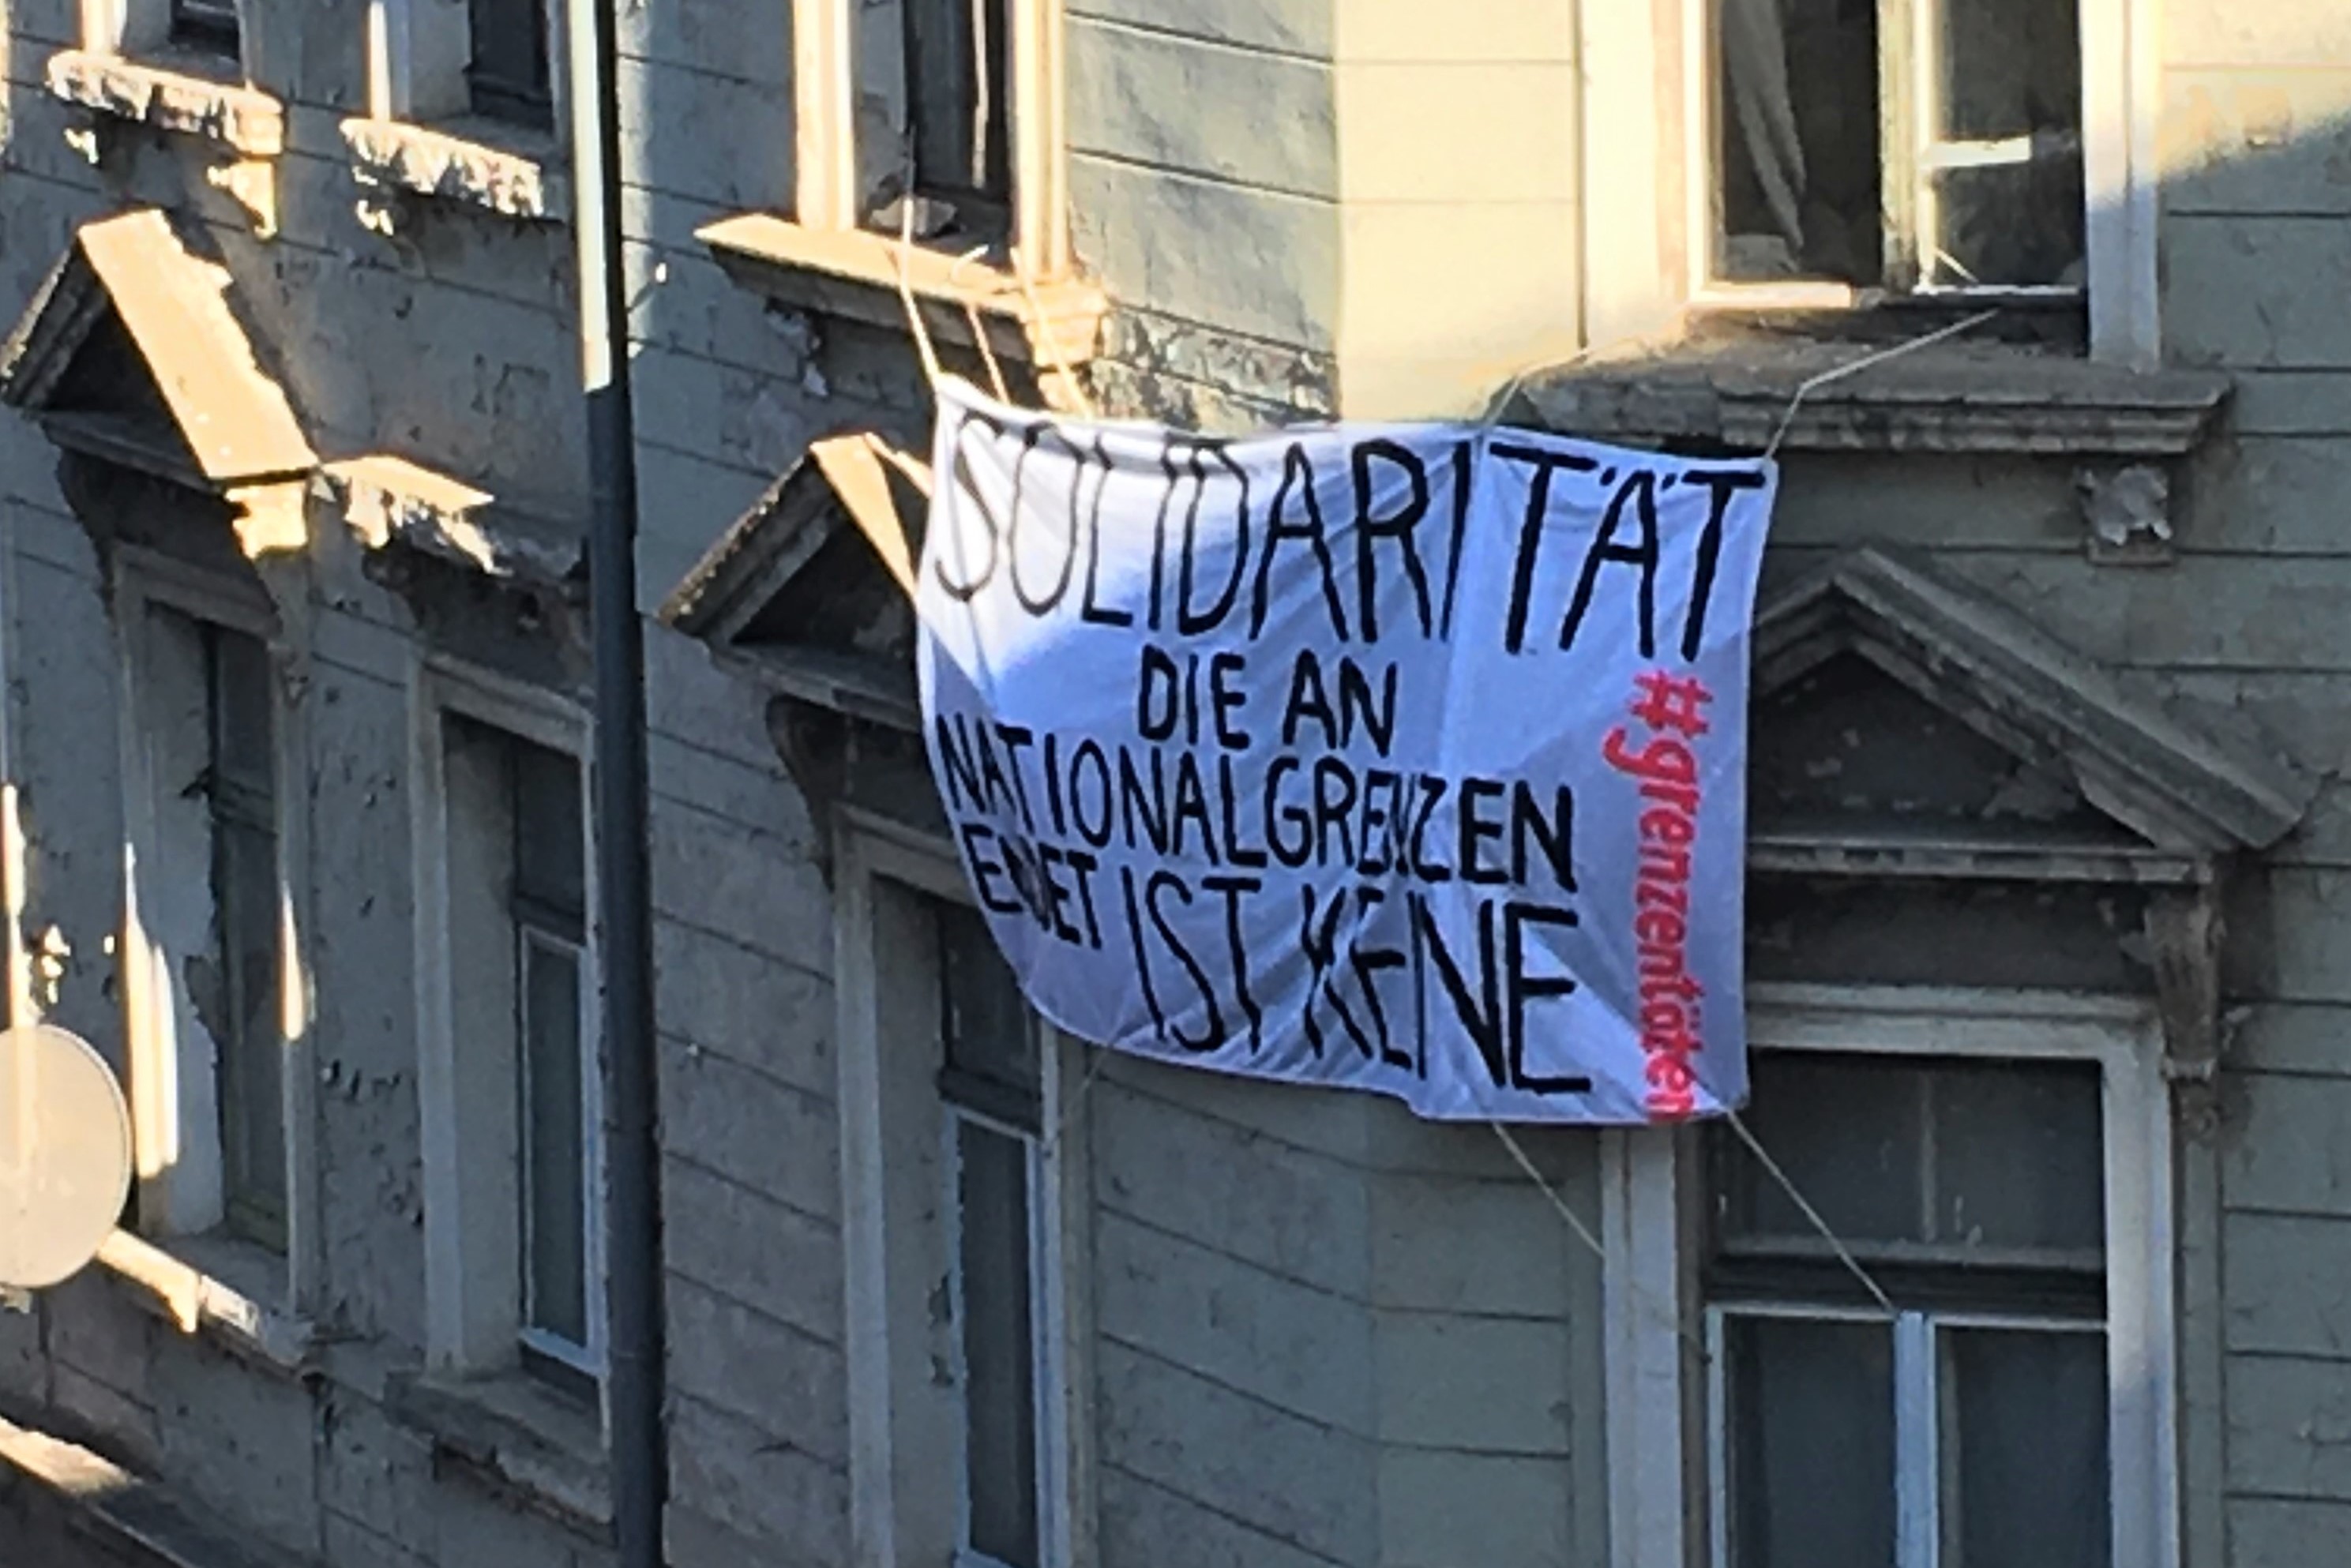 Banner 2 von 5: Solidarität, die an Nationalgrenzen, endet, ist keine! #grenzentöten